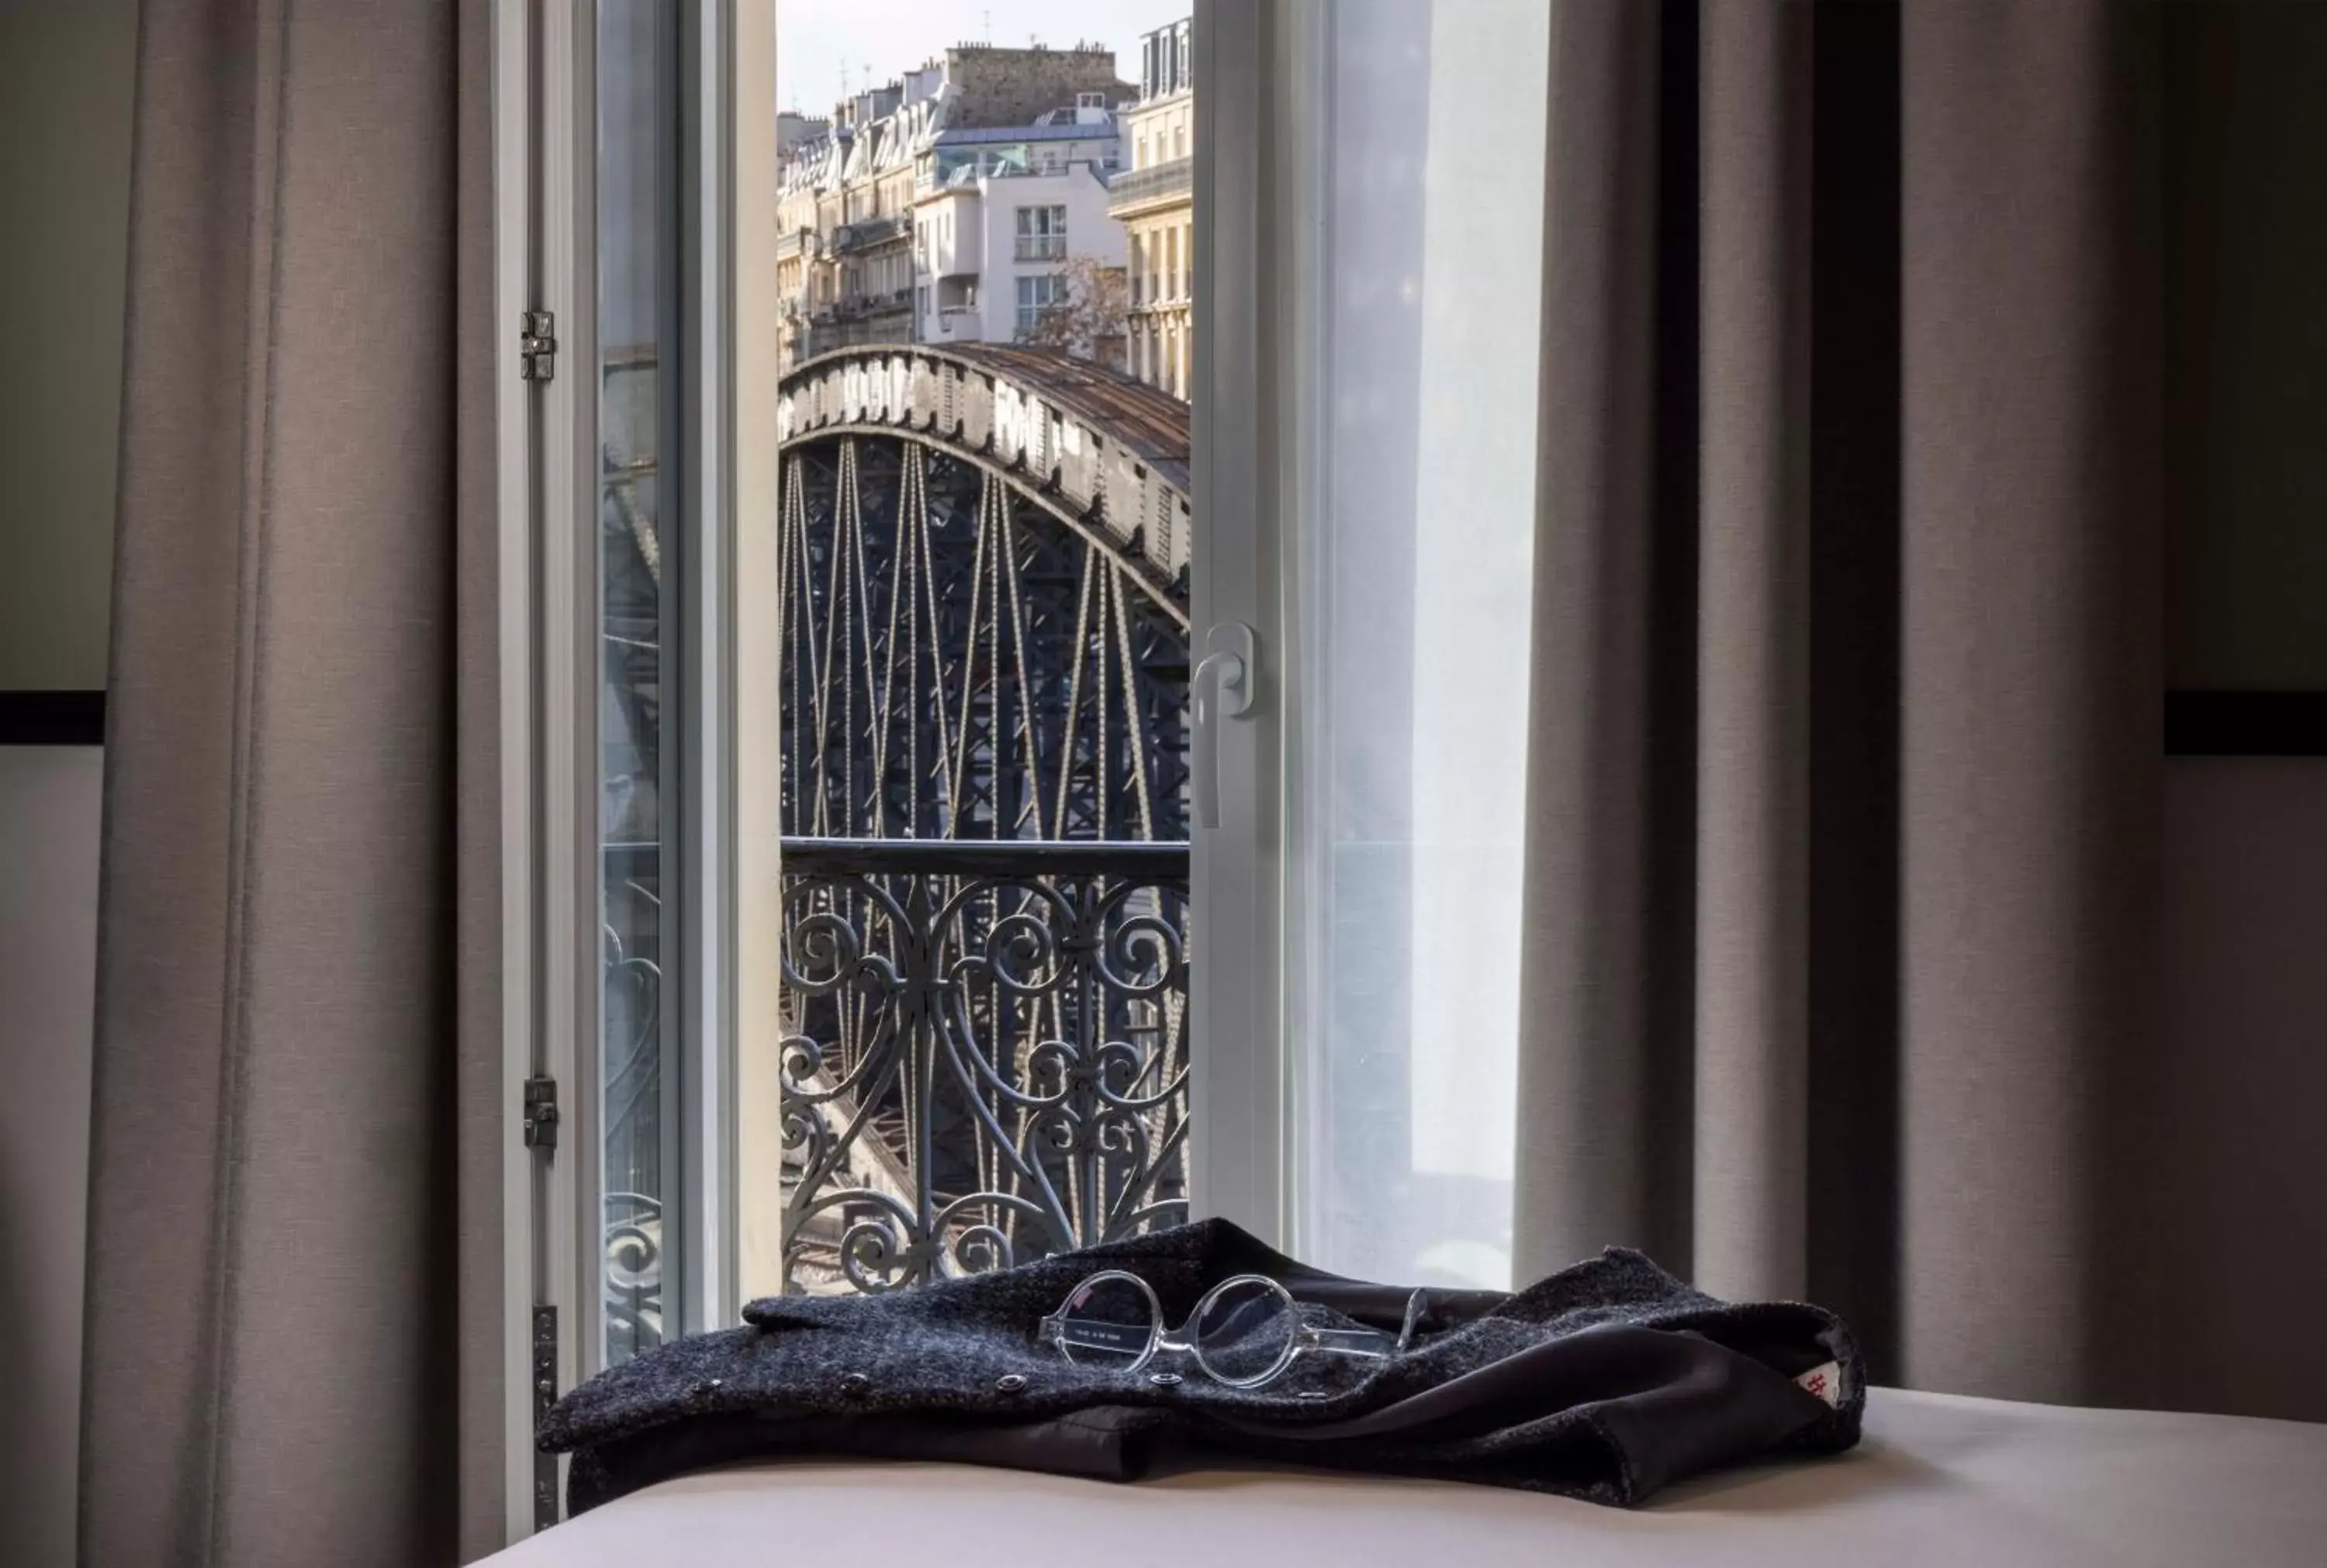 Nearby landmark, Bed in Hotel de l'Aqueduc